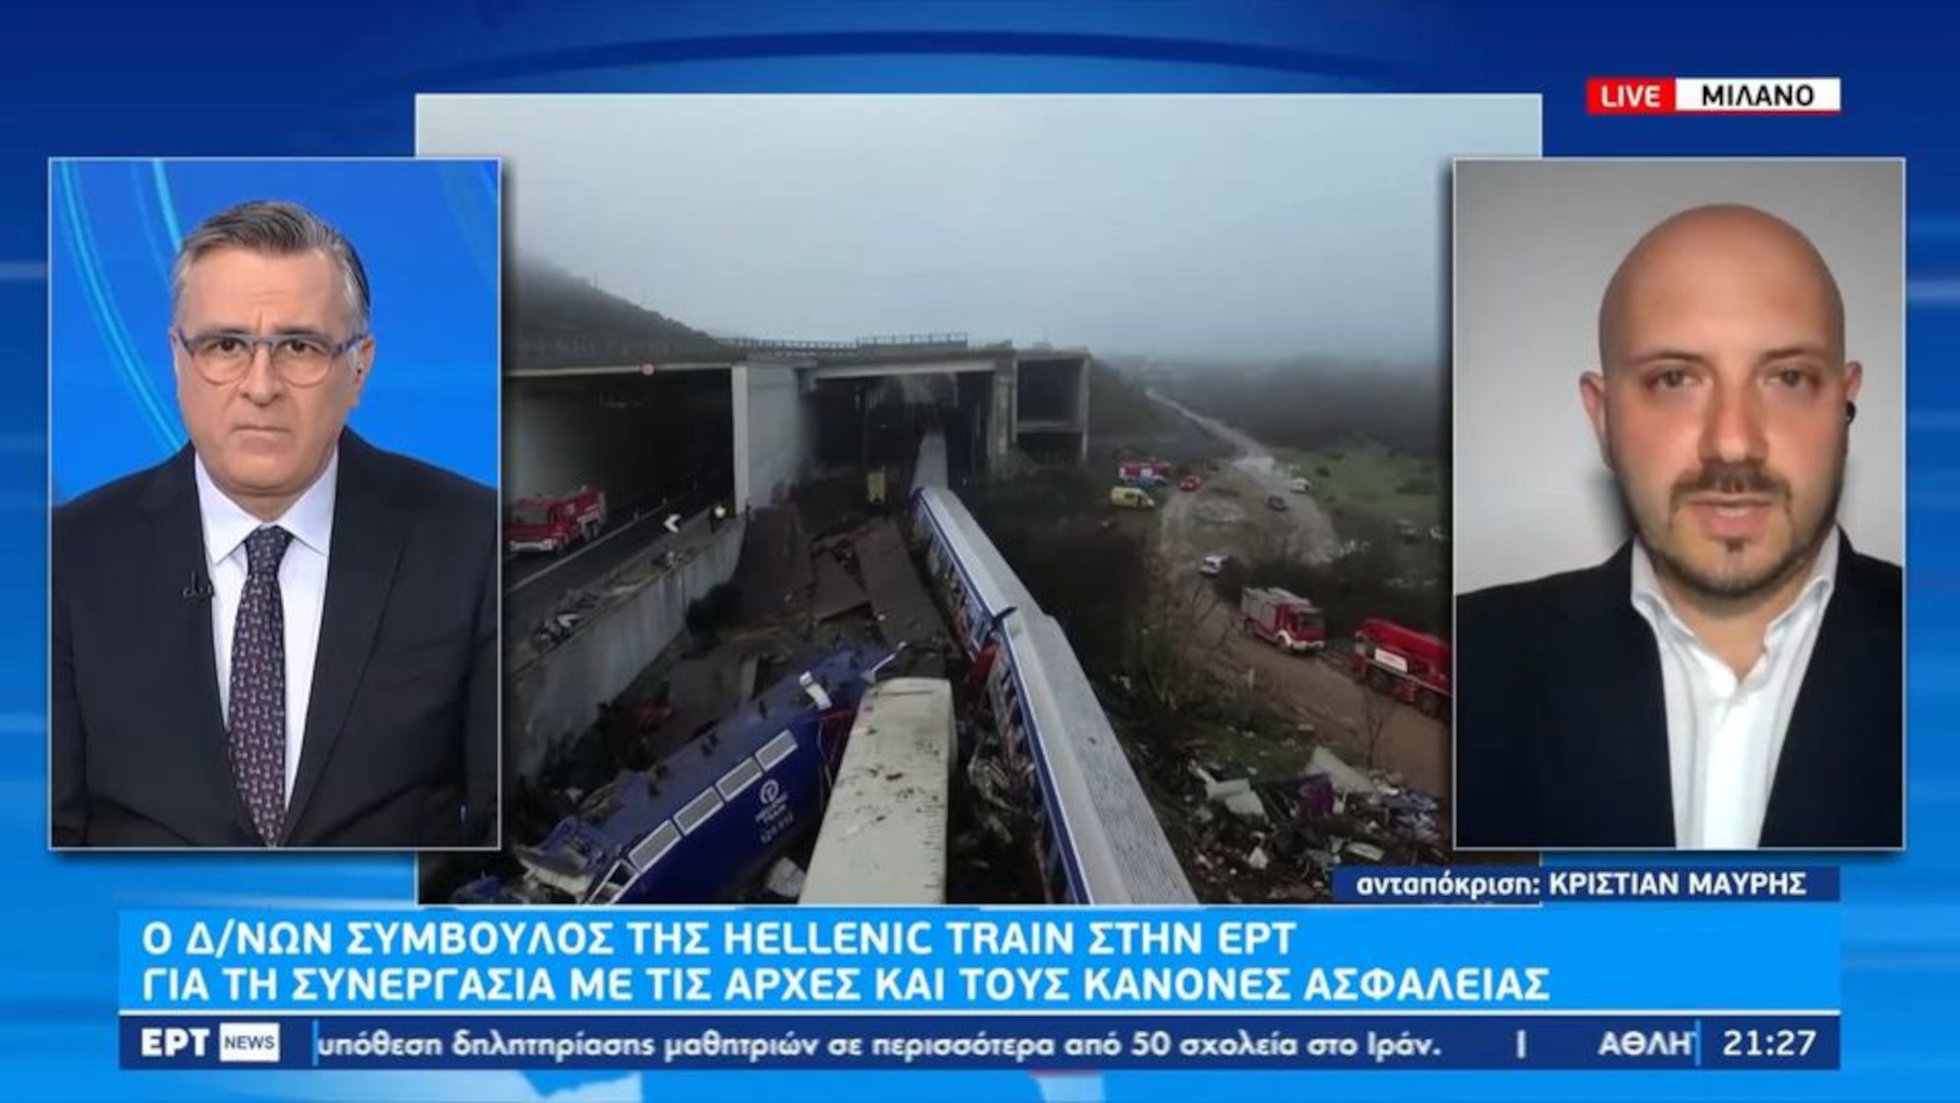 Τέμπη: Ο CEO της Hellenic Train εξηγεί γιατί δεν υπάρχει λεπτομερής κατάλογος όλων των επιβατών